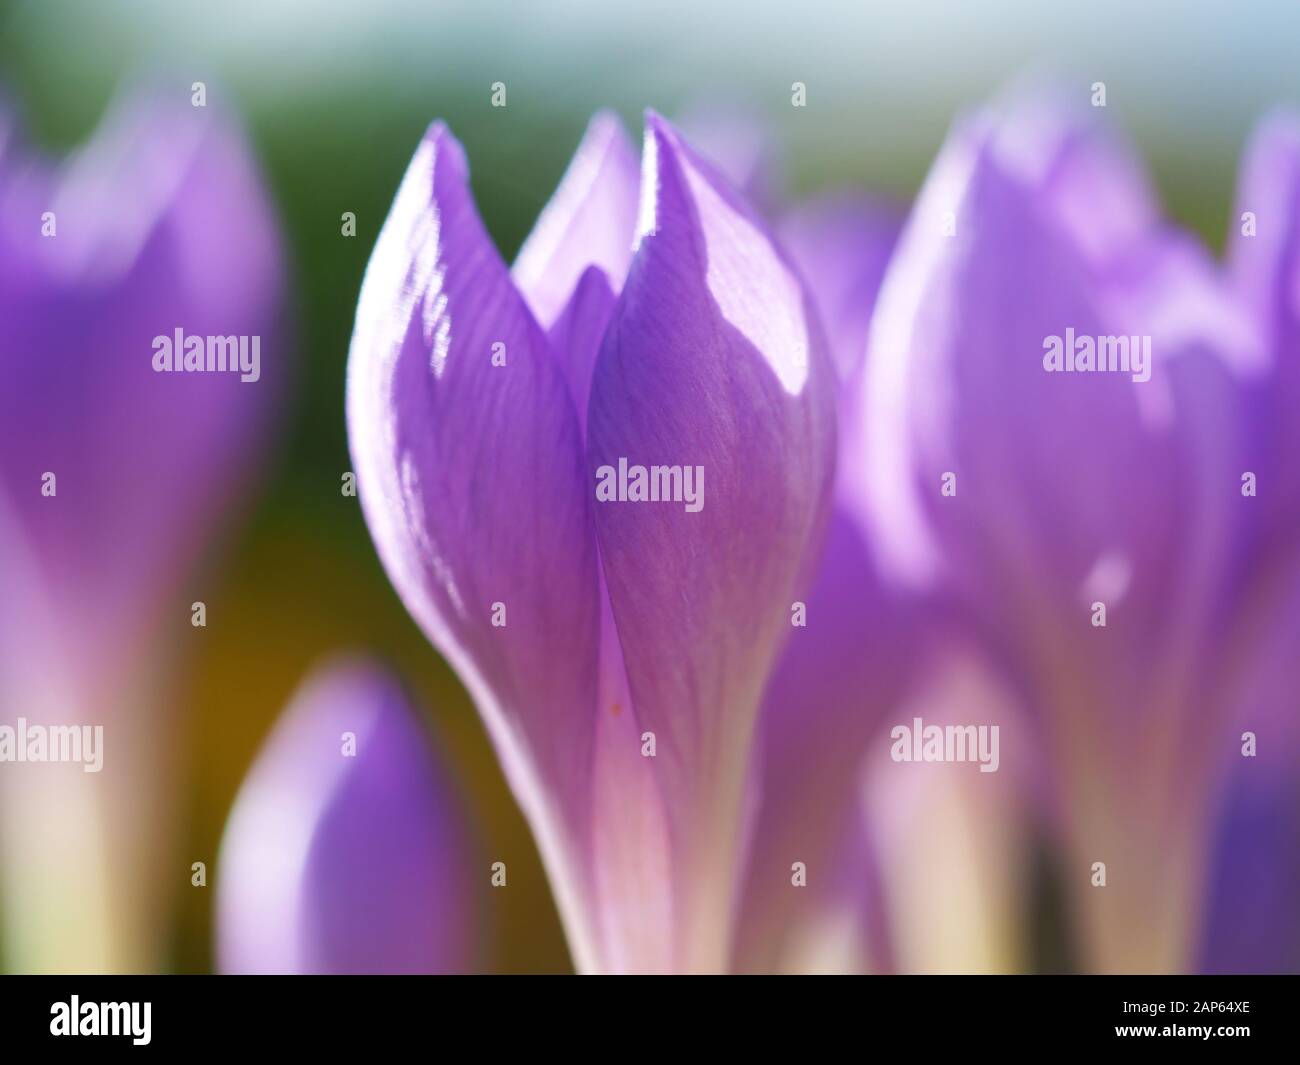 Nahaufnahme von winzigen Krokusblüten mit zarten lilafarbenen Kronblättern Stockfoto